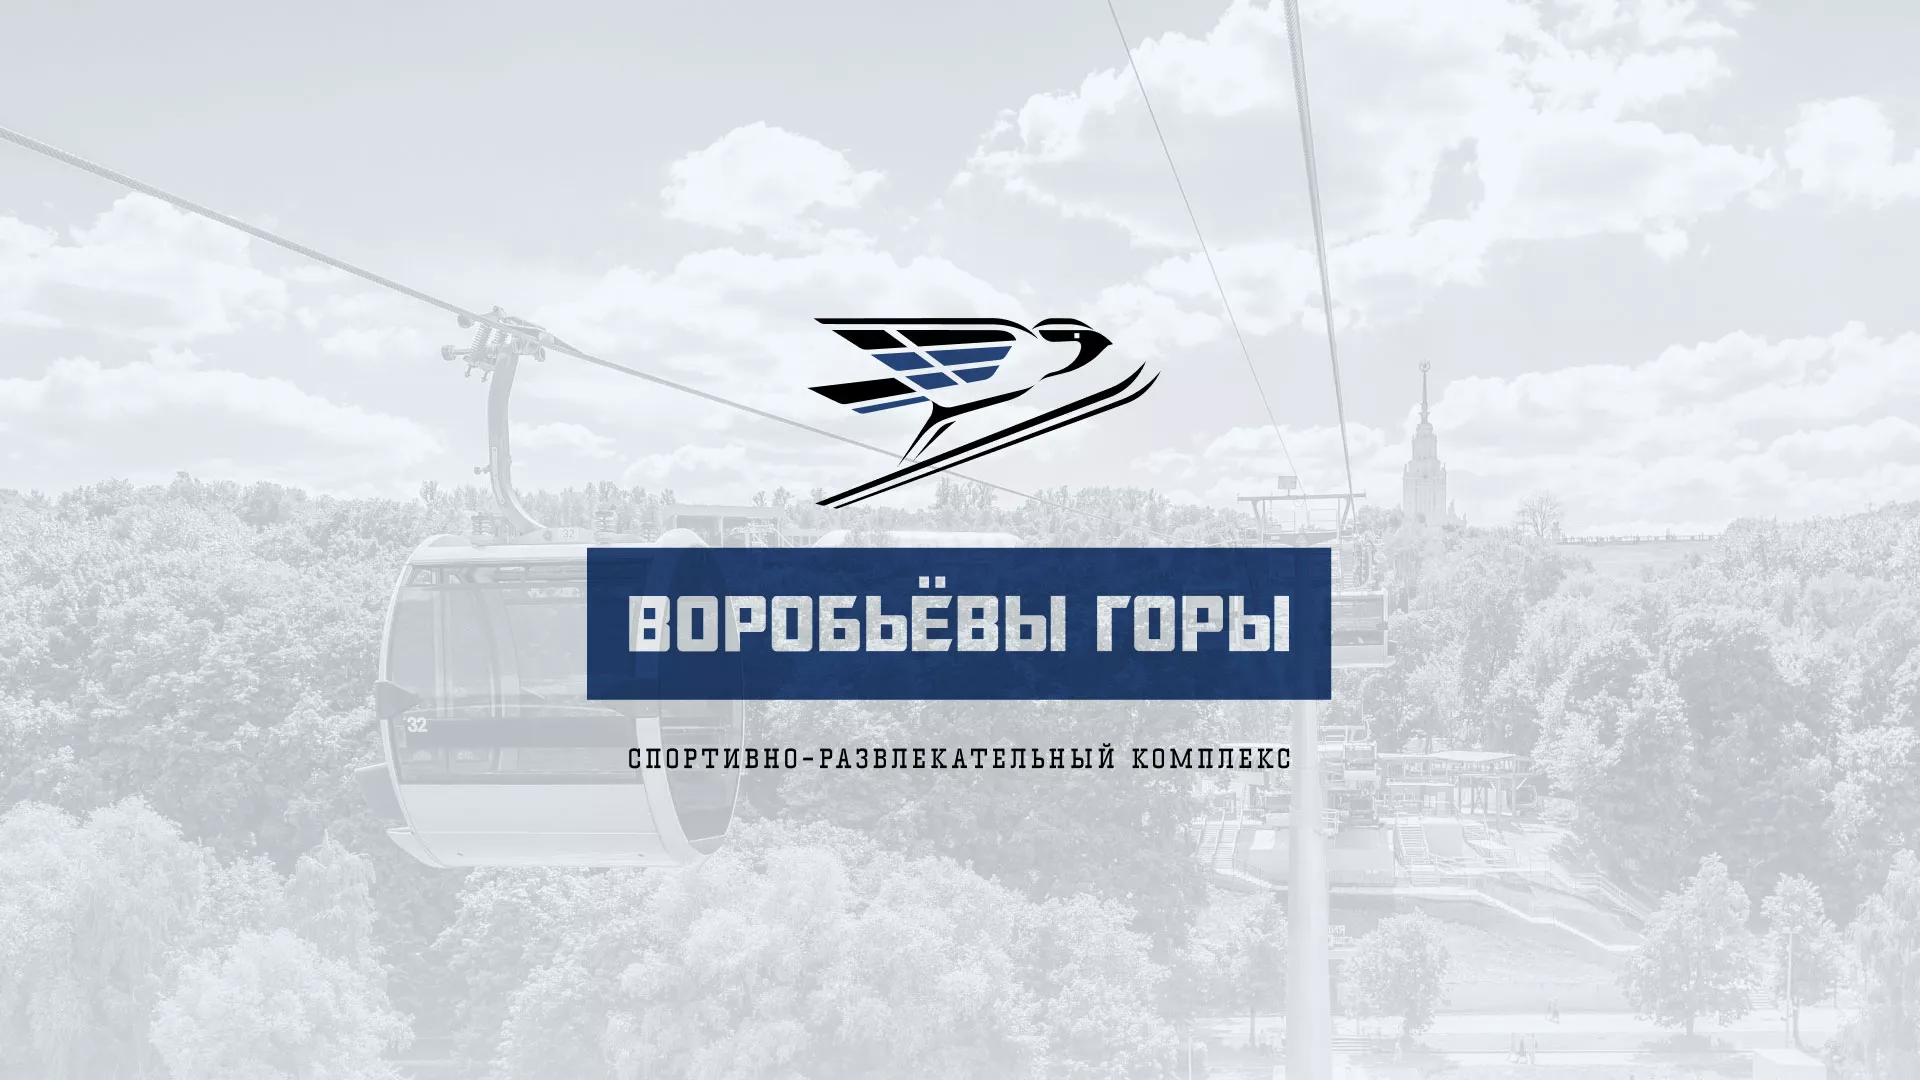 Разработка сайта в Соль-Илецке для спортивно-развлекательного комплекса «Воробьёвы горы»